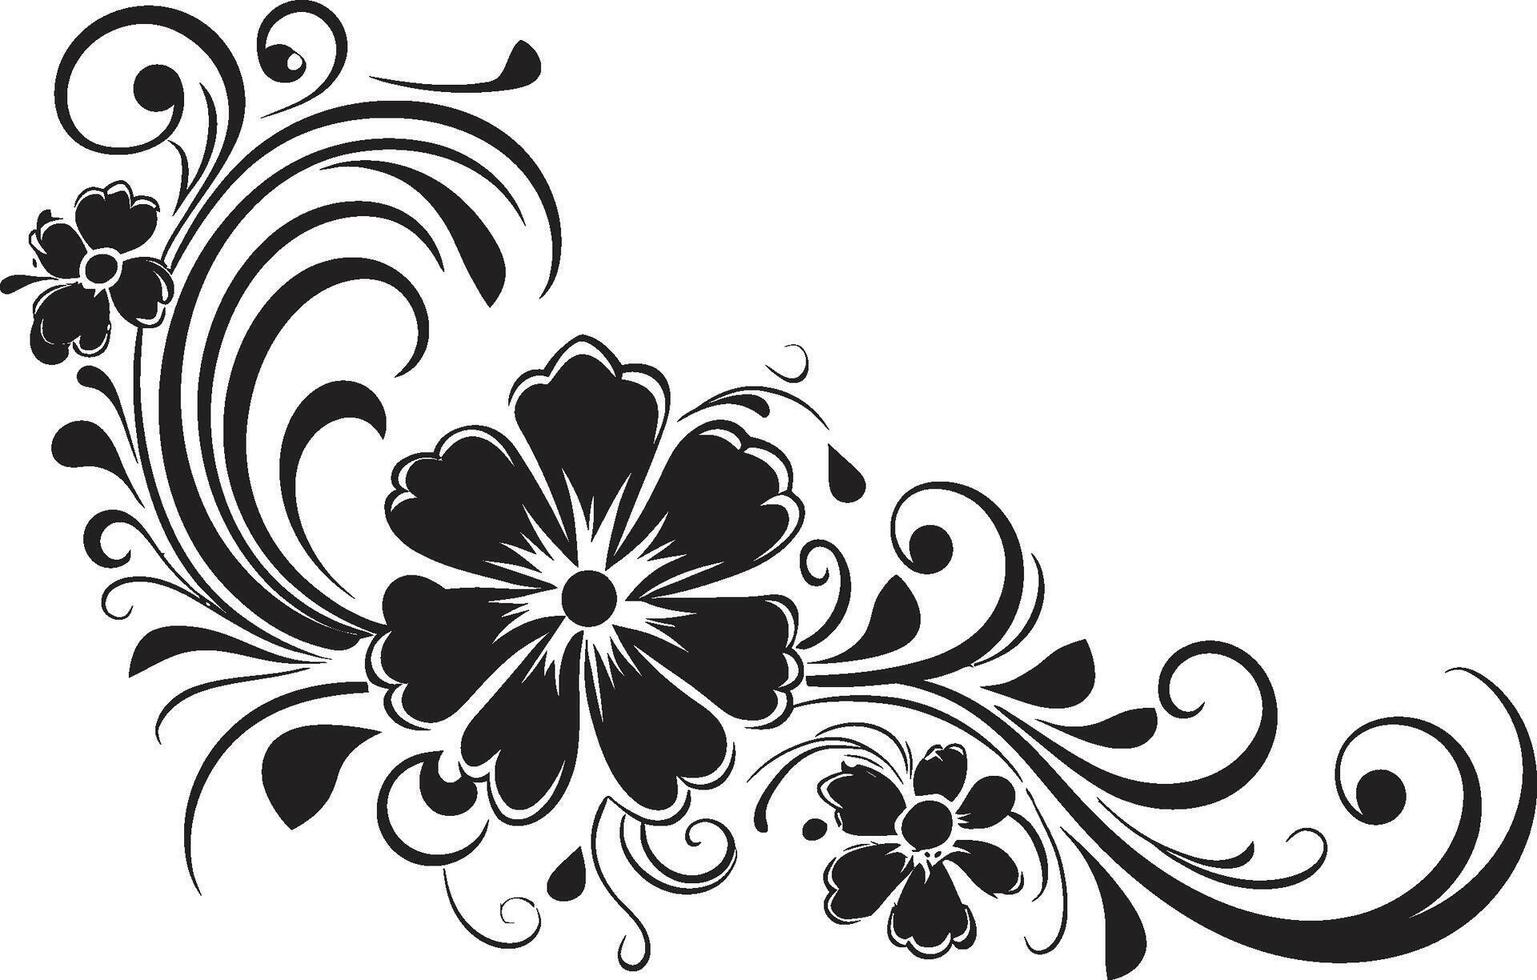 ornato lineamenti elegante nero logo evidenziazione decorativo elemento mulinello di fantasia elegante vettore design con scarabocchio decorazioni